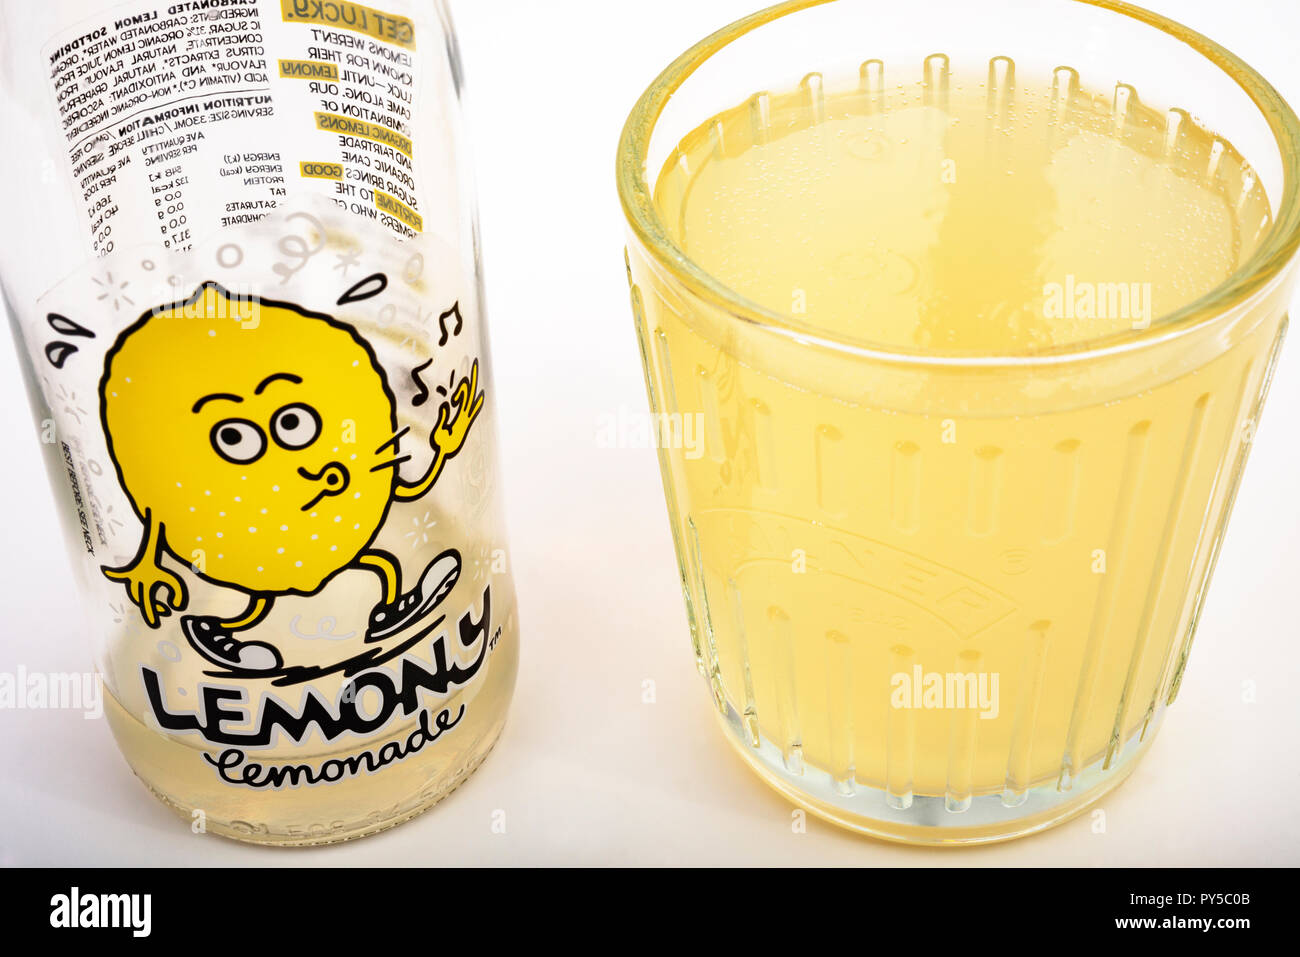 Karma Kola Lemony lemonade Stock Photo